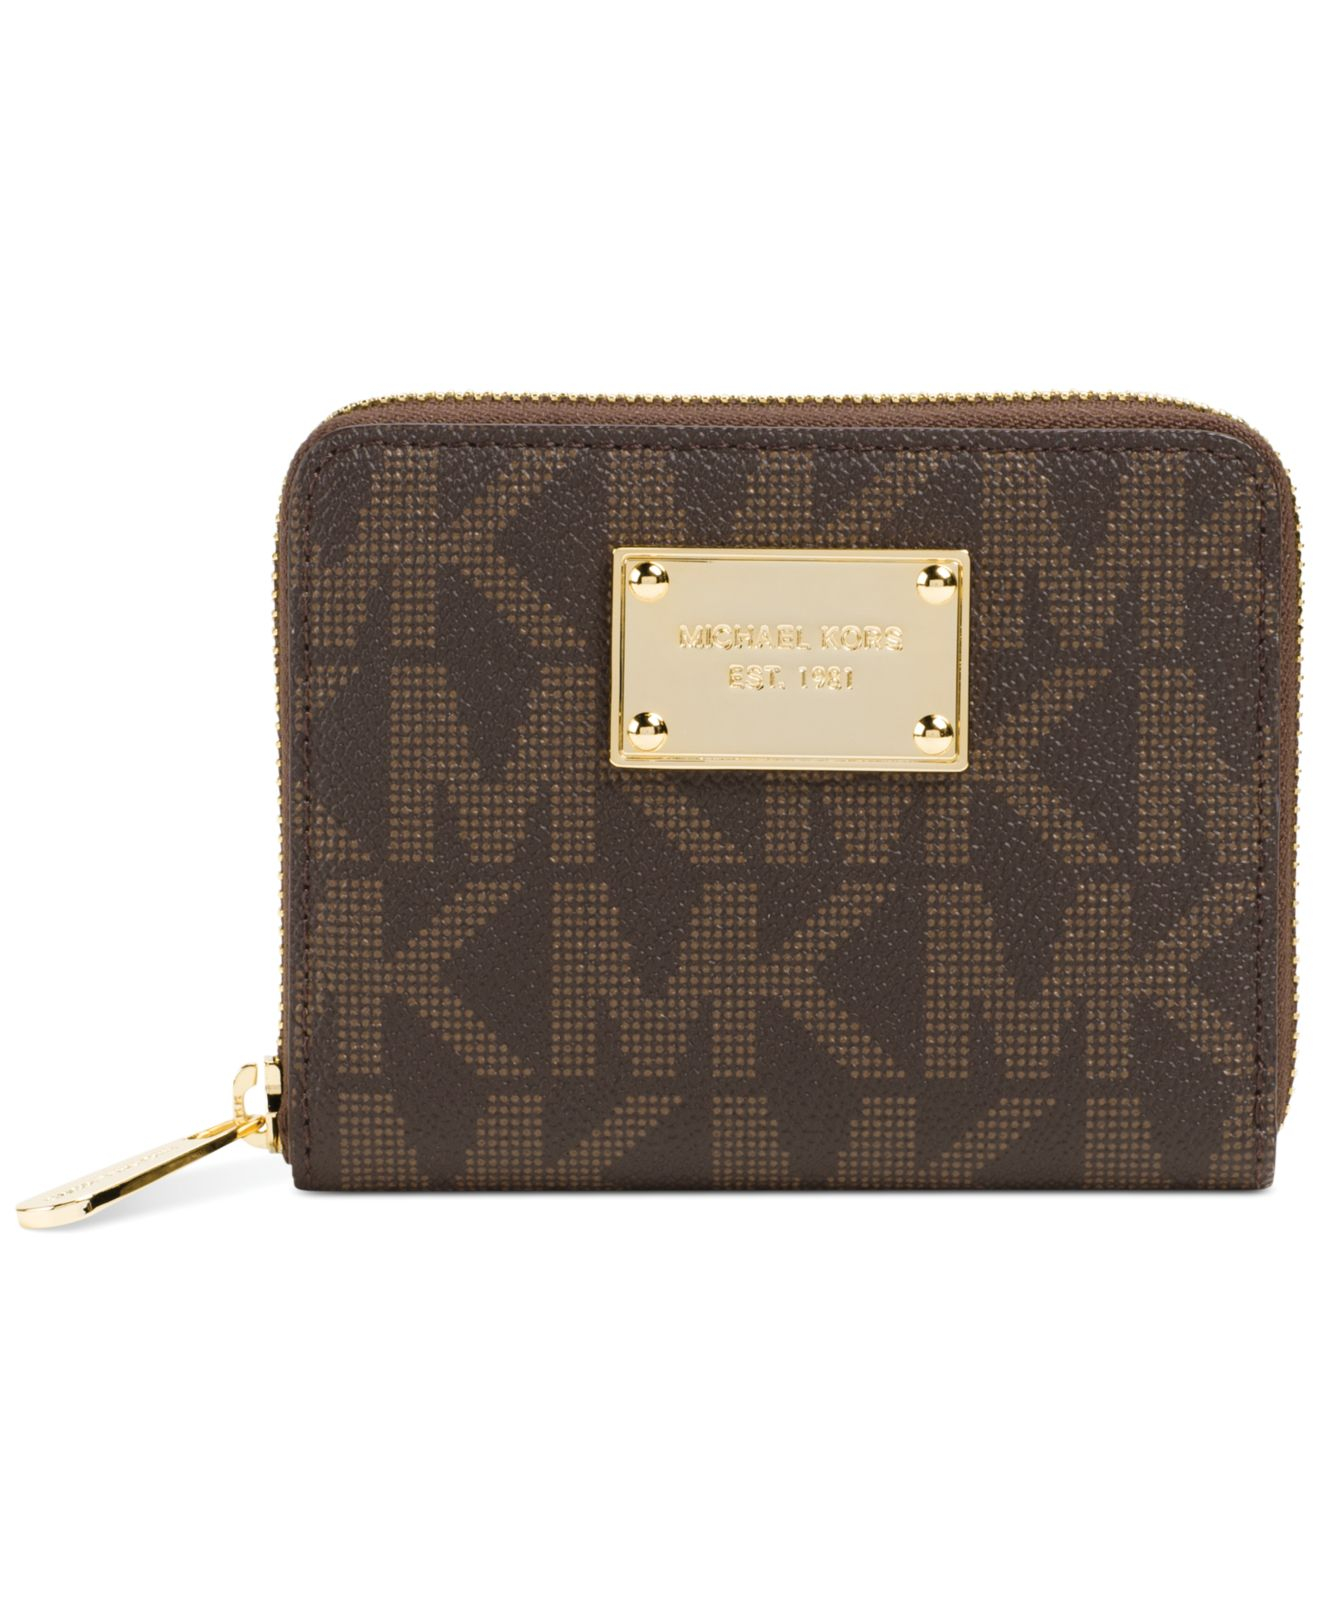 MK zip around wallet